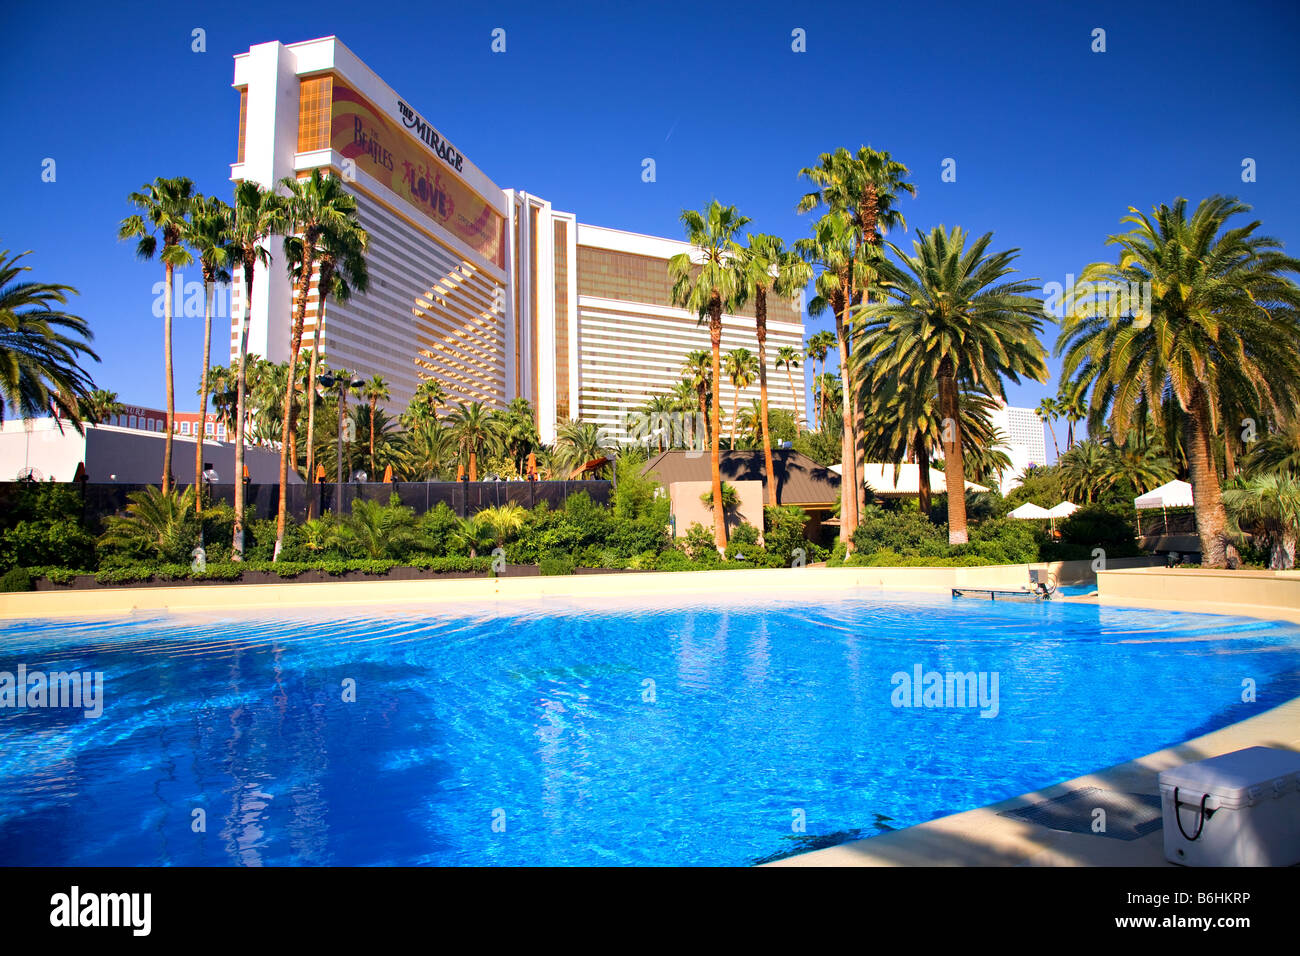 MIRAGE POOL 👙, 4K Tour of Mirage Las Vegas Pool